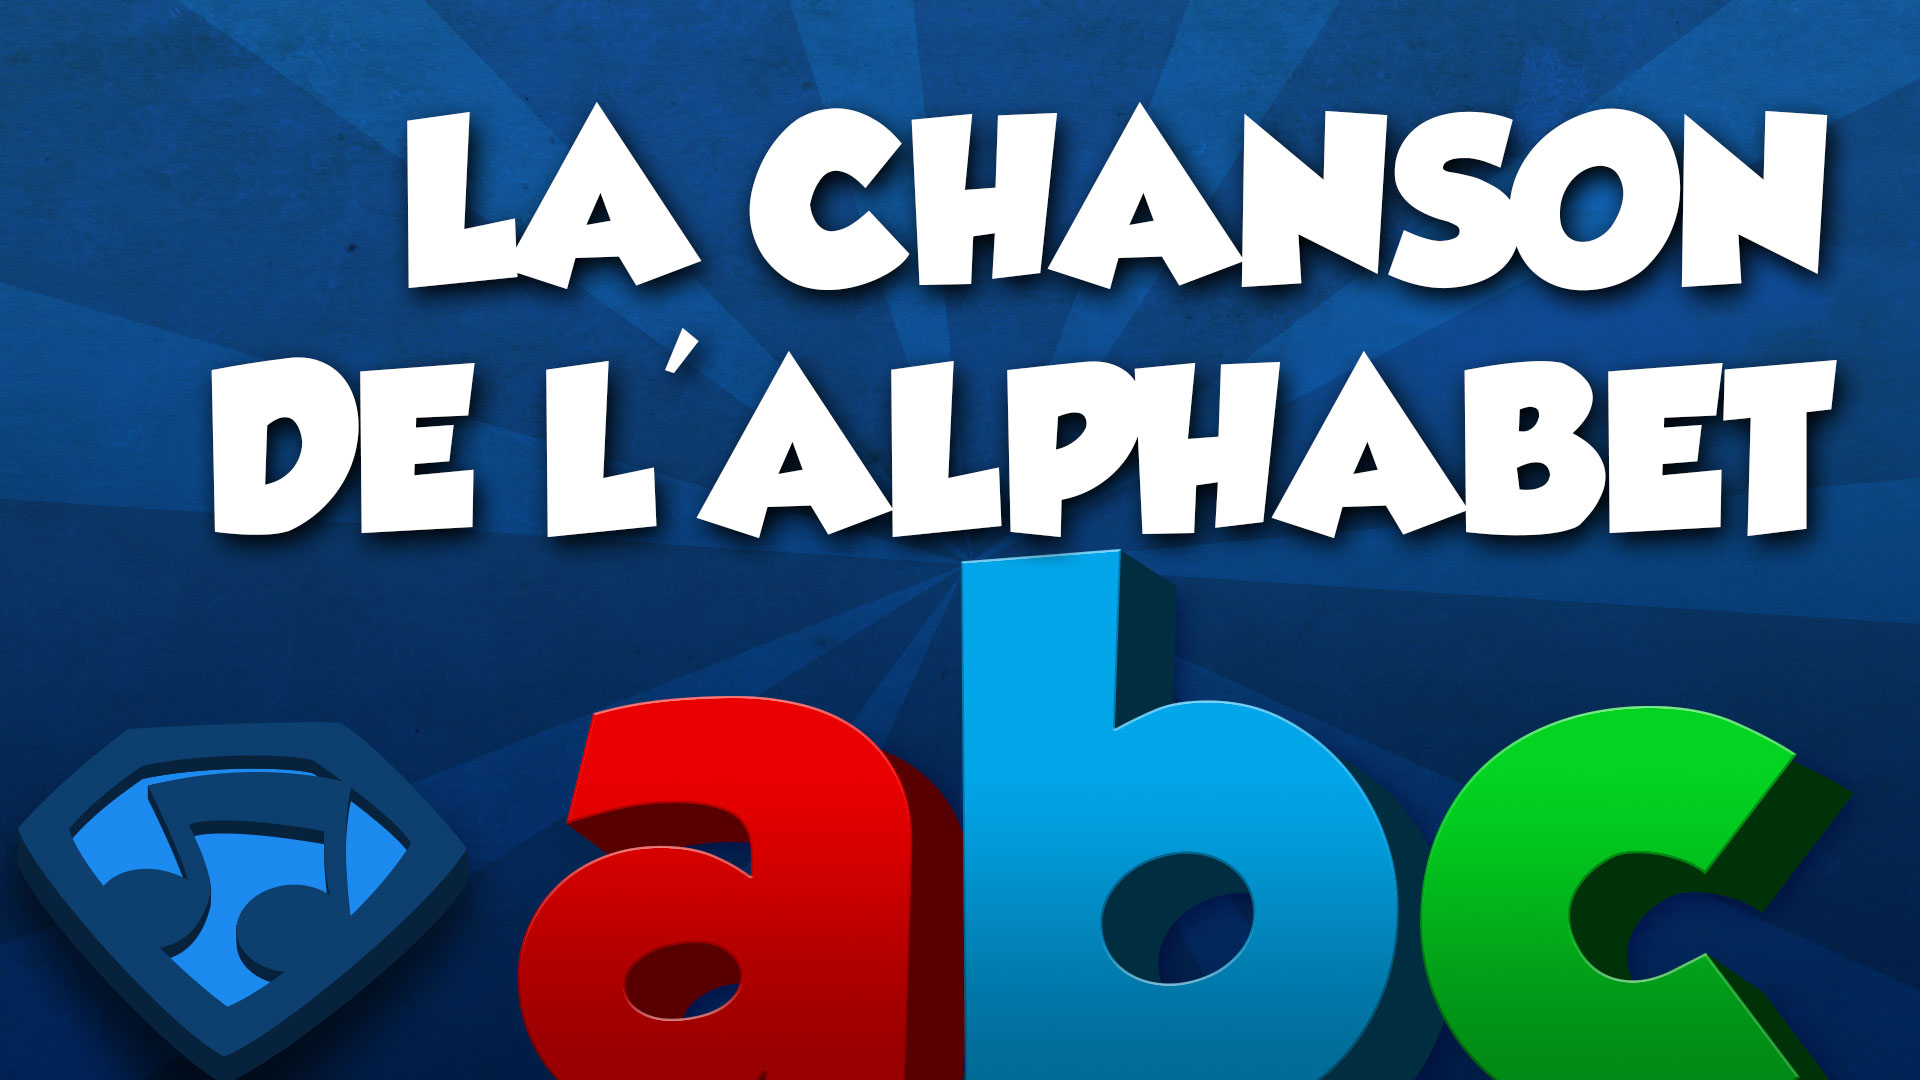 Miniature du vidéo La Chanson de l'Alphabet (Lettres Minuscules). Cliquez pour regarder le vidéo.